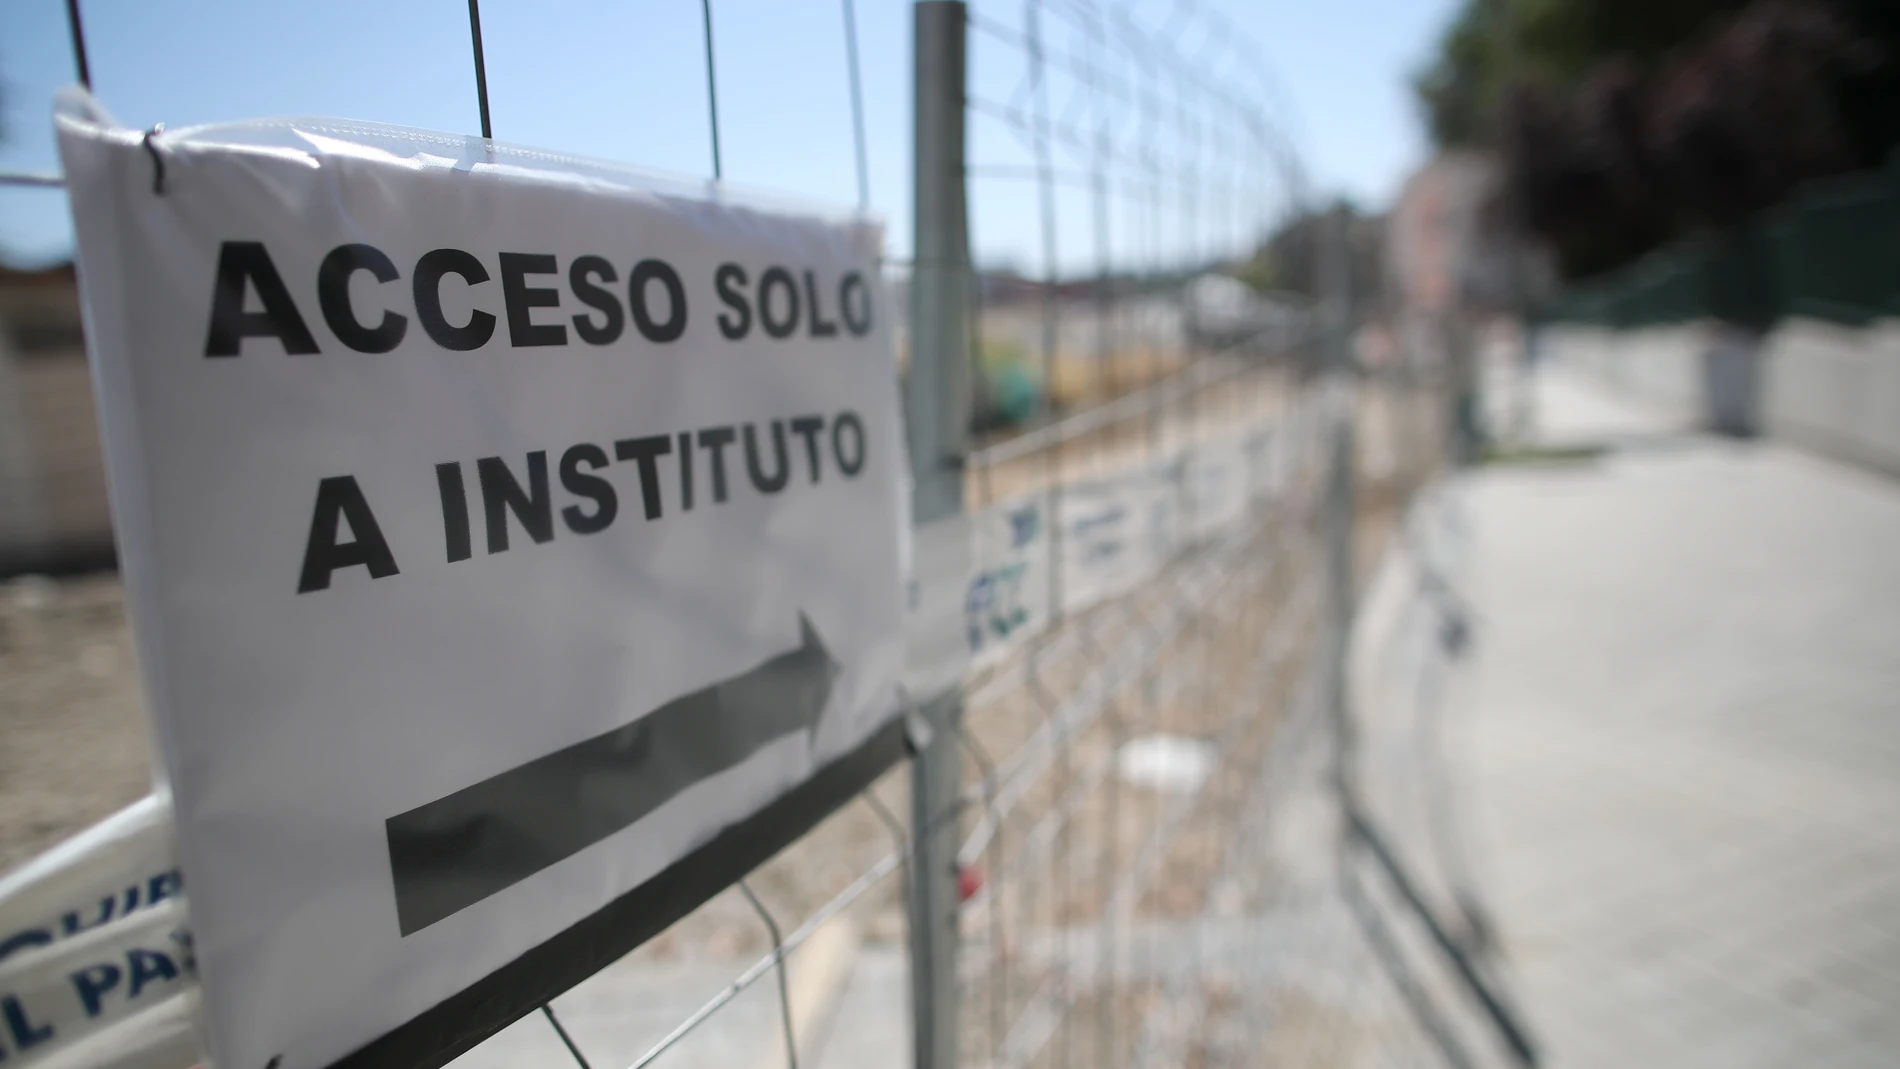 Las obras de urbanización Mahou-Calderón dificultan el acceso a colegios